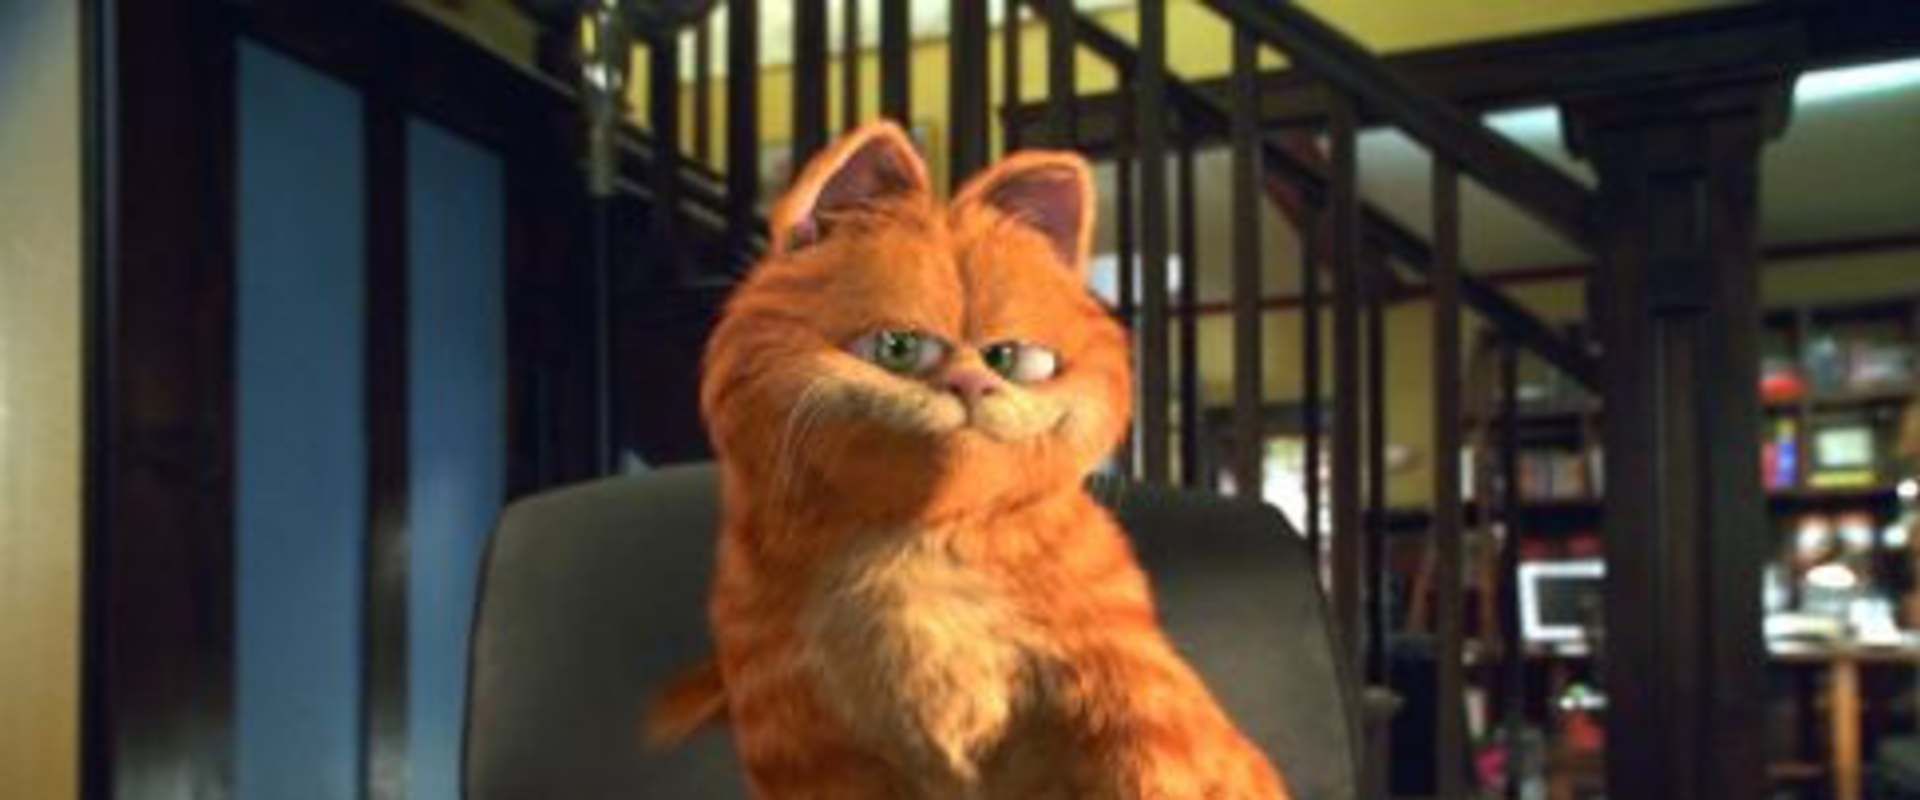 Garfield background 1